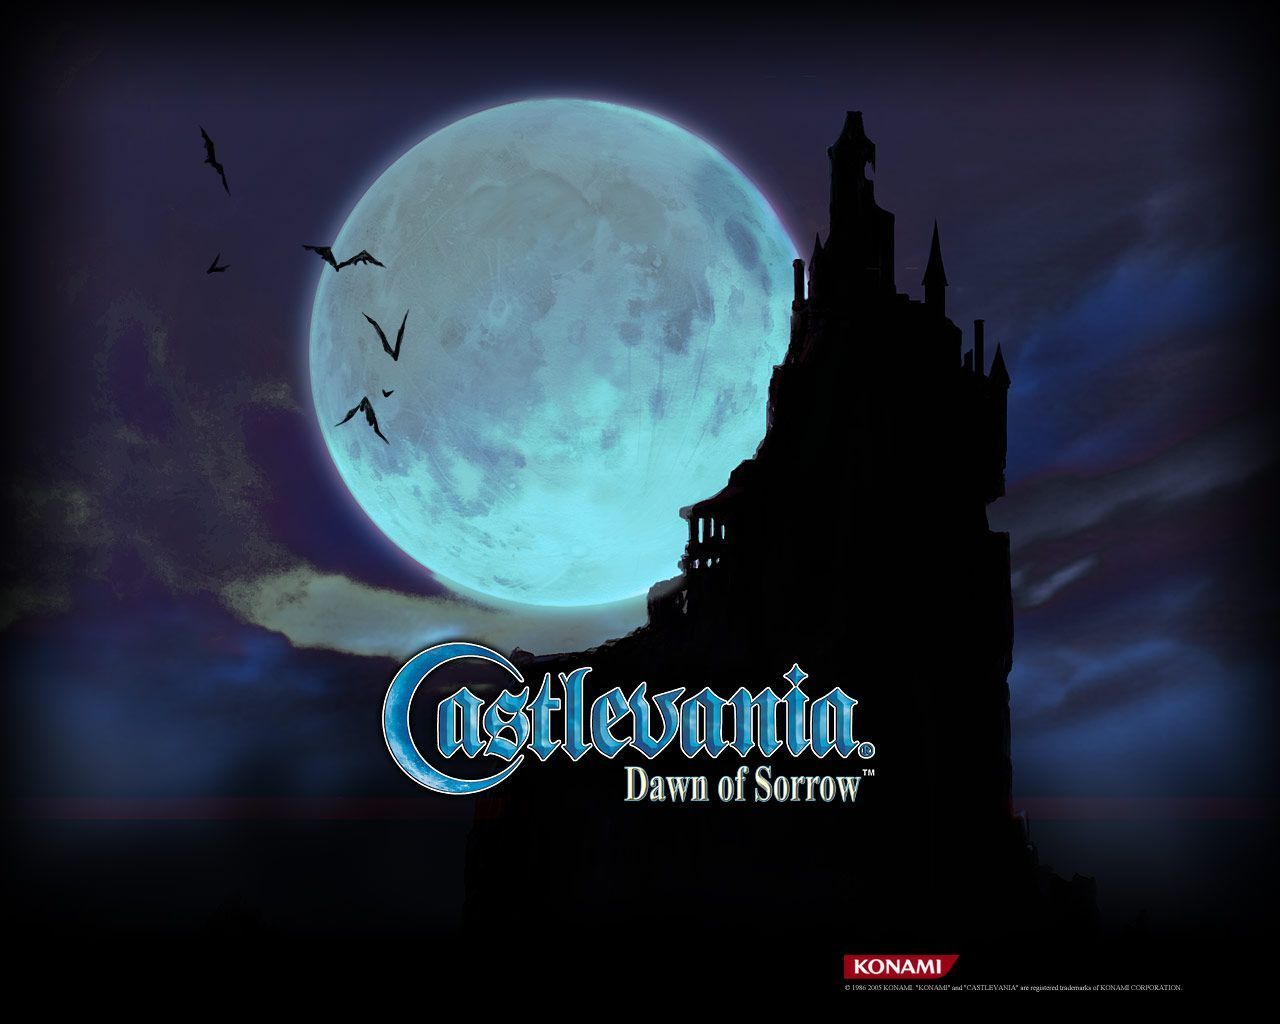 Castlevania: Dawn of Sorrow Wallpaper | Castlevania Crypt.com | A ...